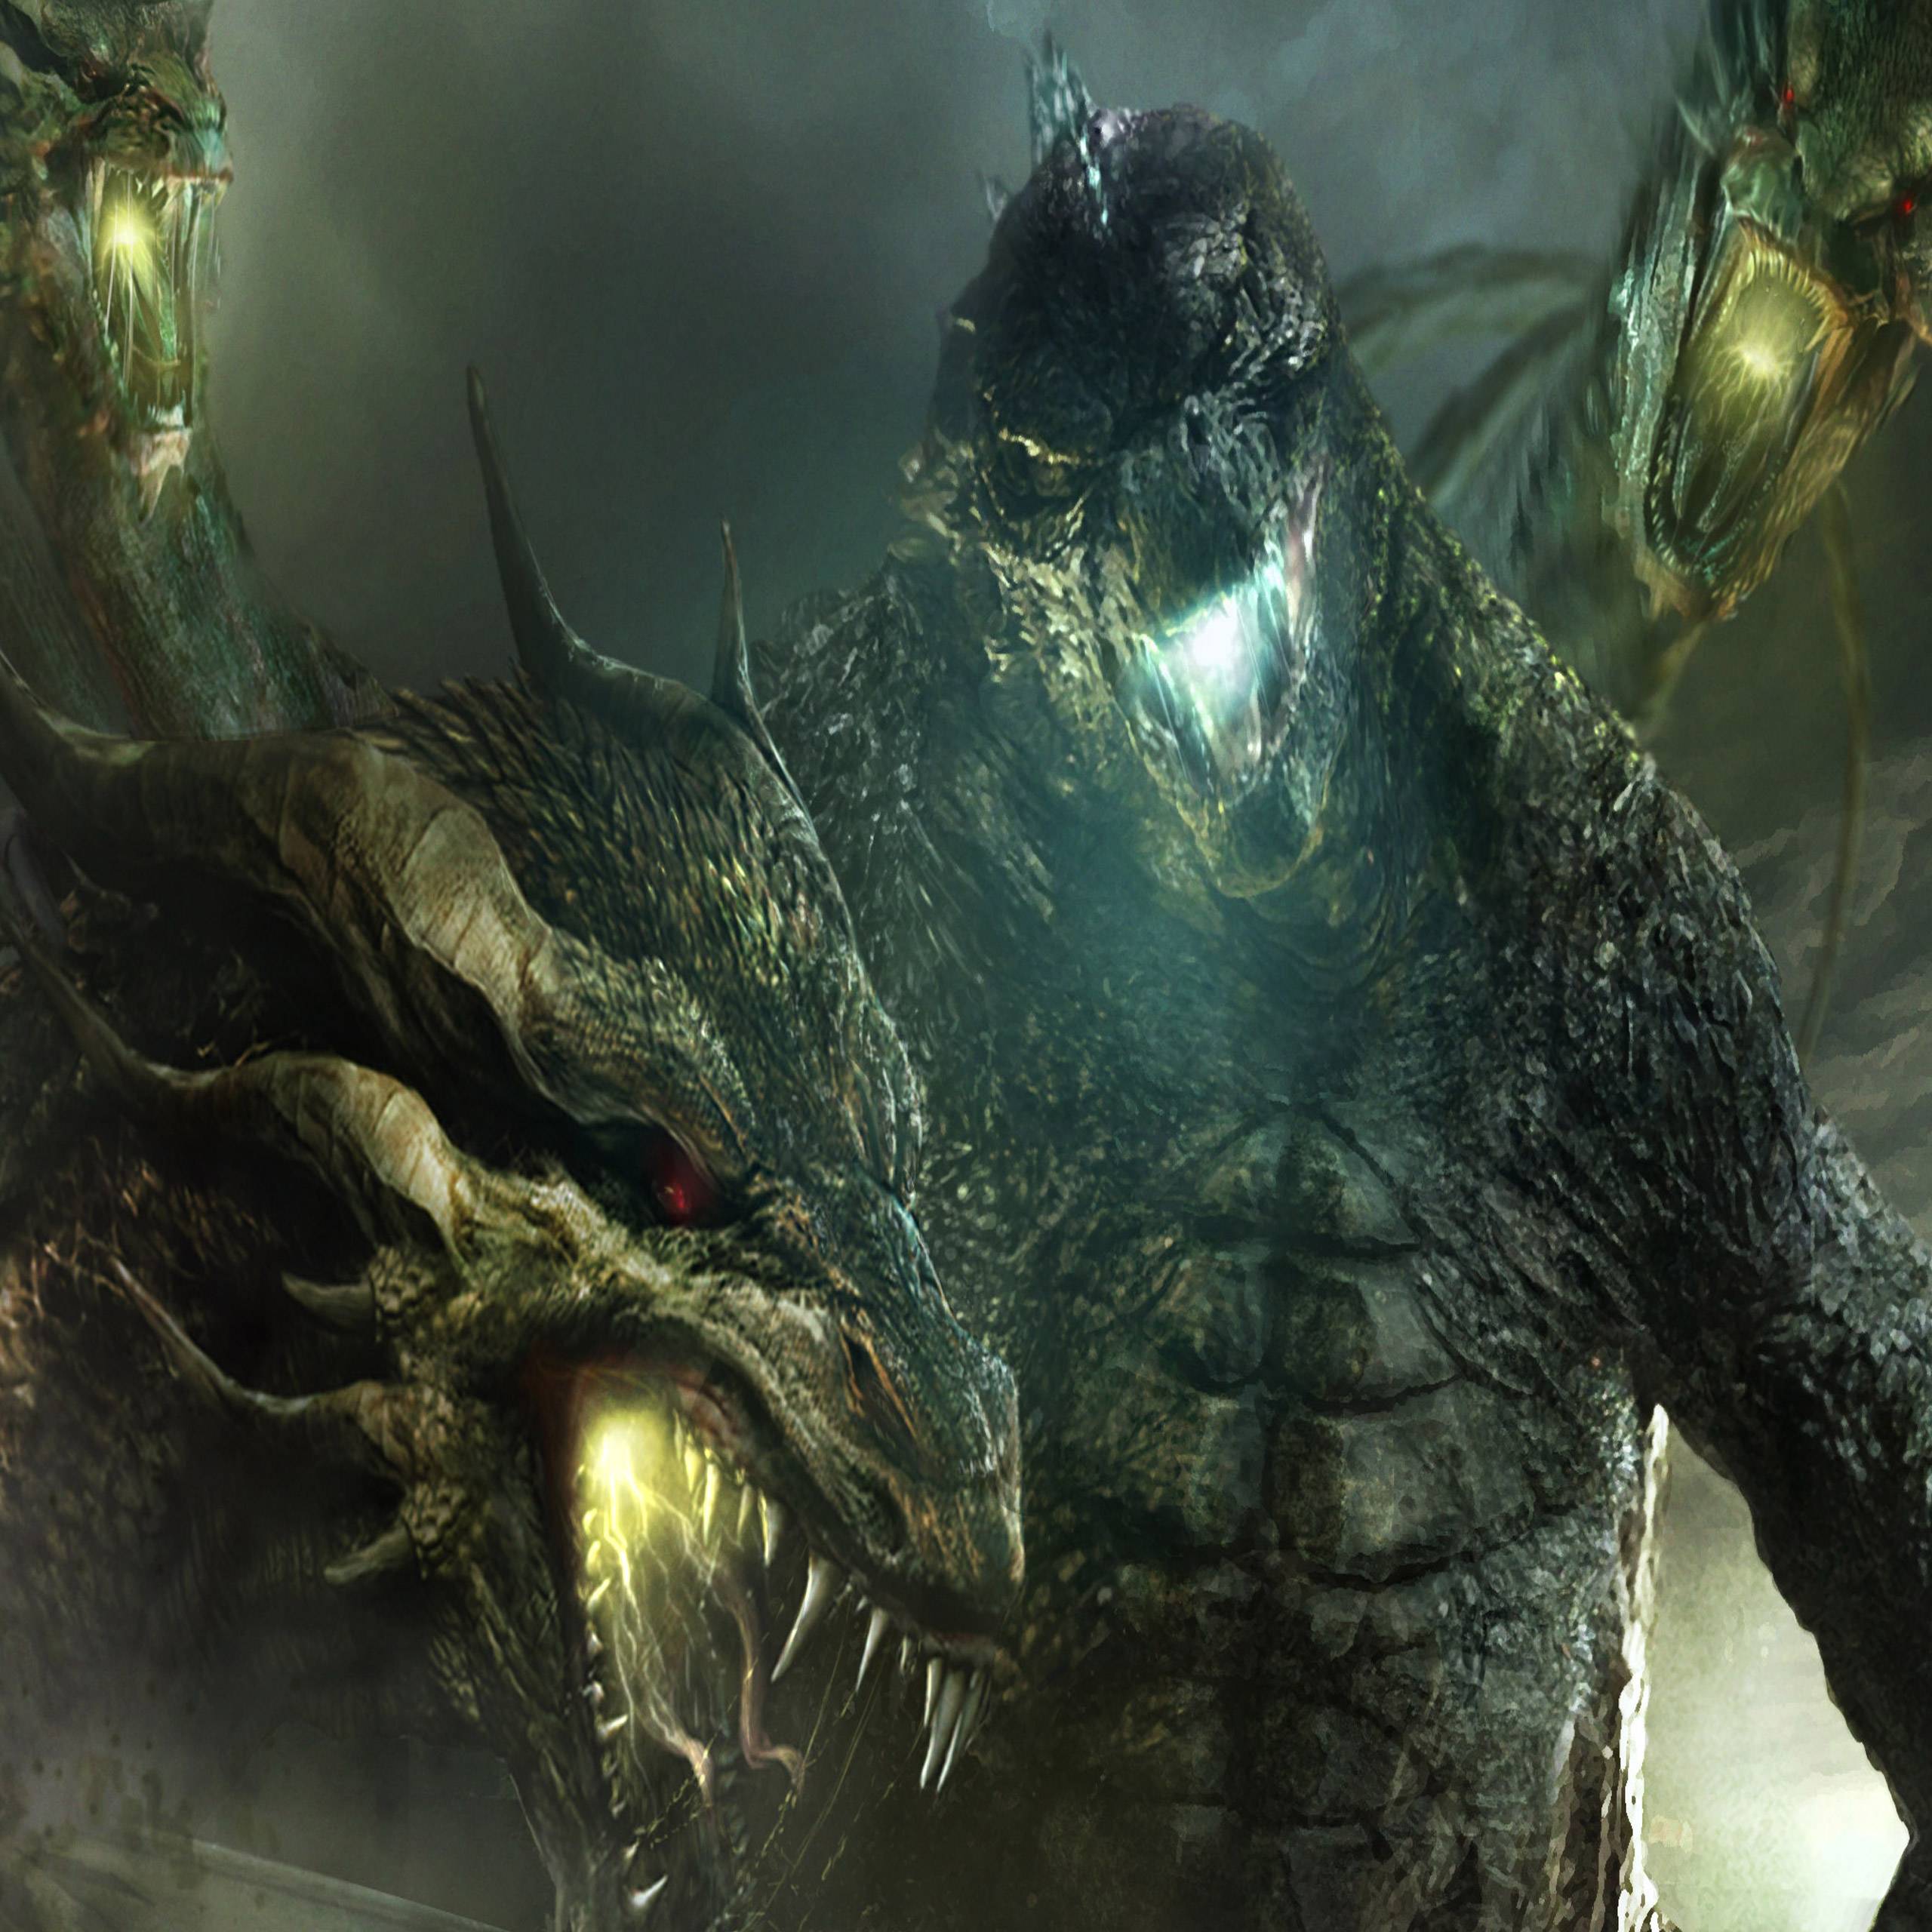 TITANS - Godzilla vs King Ghidorah wallpaper by Dark-Rider28 on DeviantArt